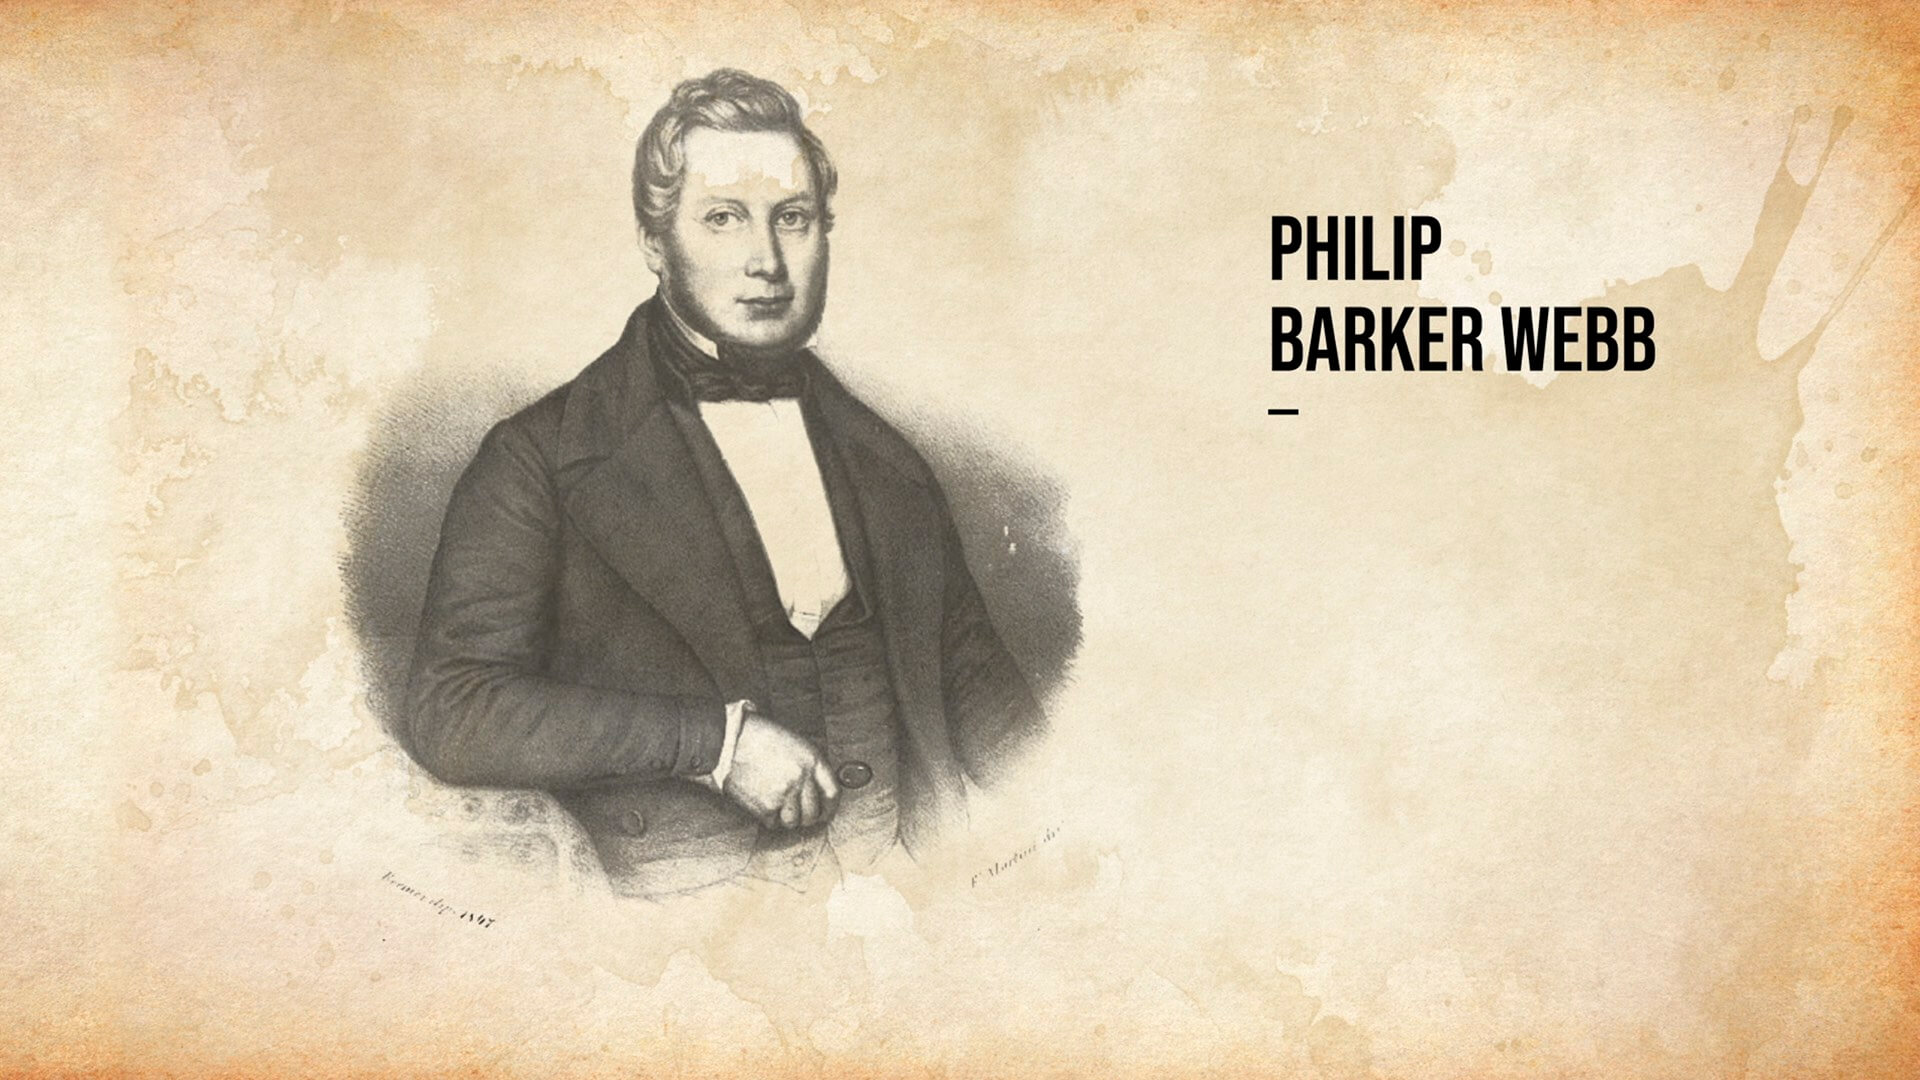 Philip Barker Webb